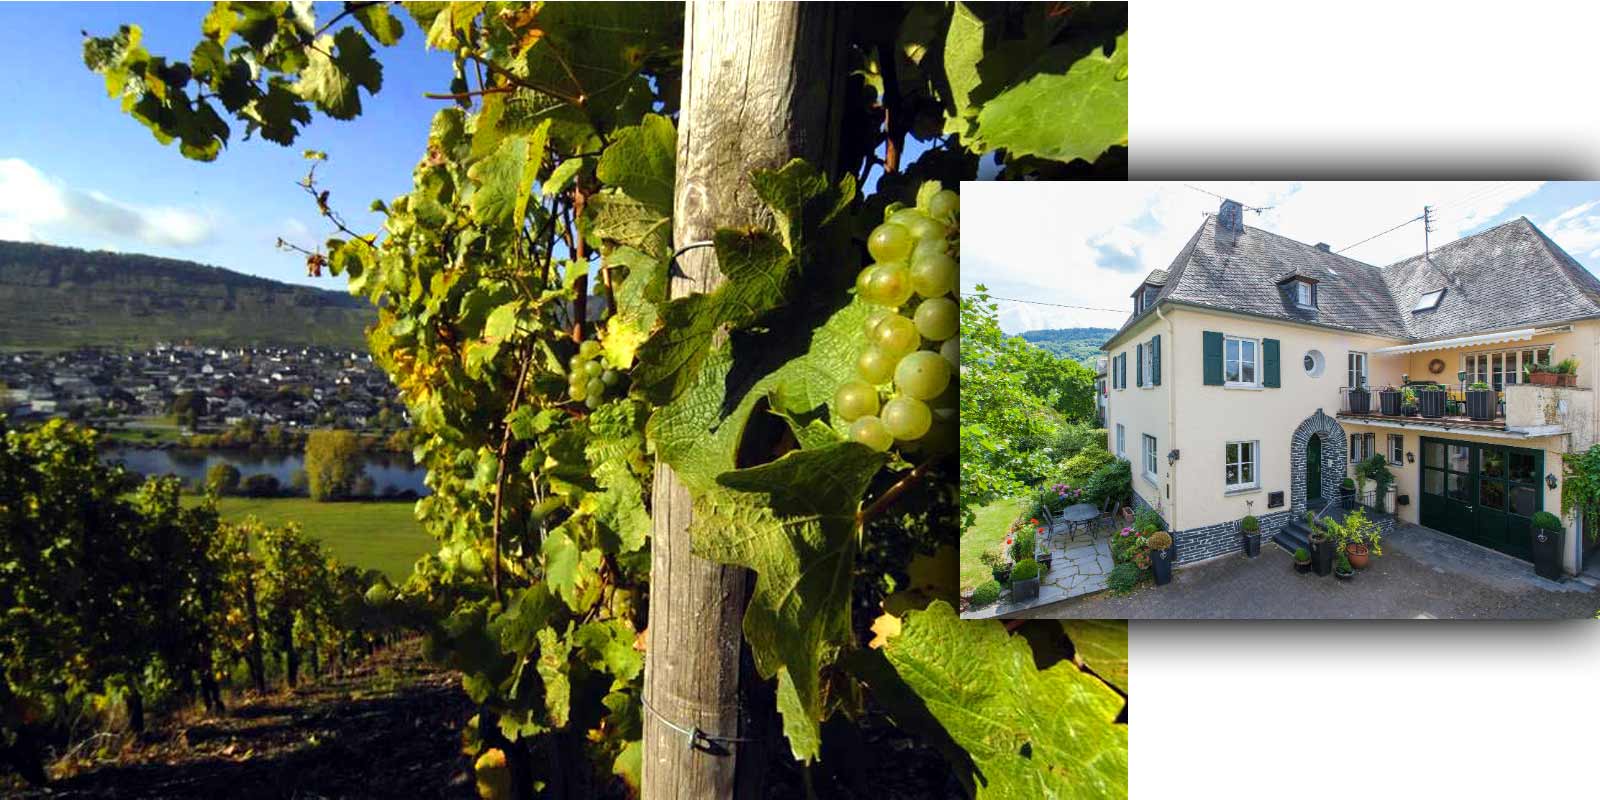 Weingut Grans-Fassian - Anbaugebiet Mosel Gerhard Grans übernahm 1982 von seinem Vater Matthias den Weinbaubetrieb und vergrößerte die damals 4 ha große Rebfläche auf heute 9,5 ha. Sie ist zu 88% mit Riesling, 10% Weißburgunder und 2% Grauburgunder bepflanzt. Die besten Lagen des Weinguts sind zugleich klassifizierte Lagen - sie sind in die höchste Anbaukategorie eingestuft.